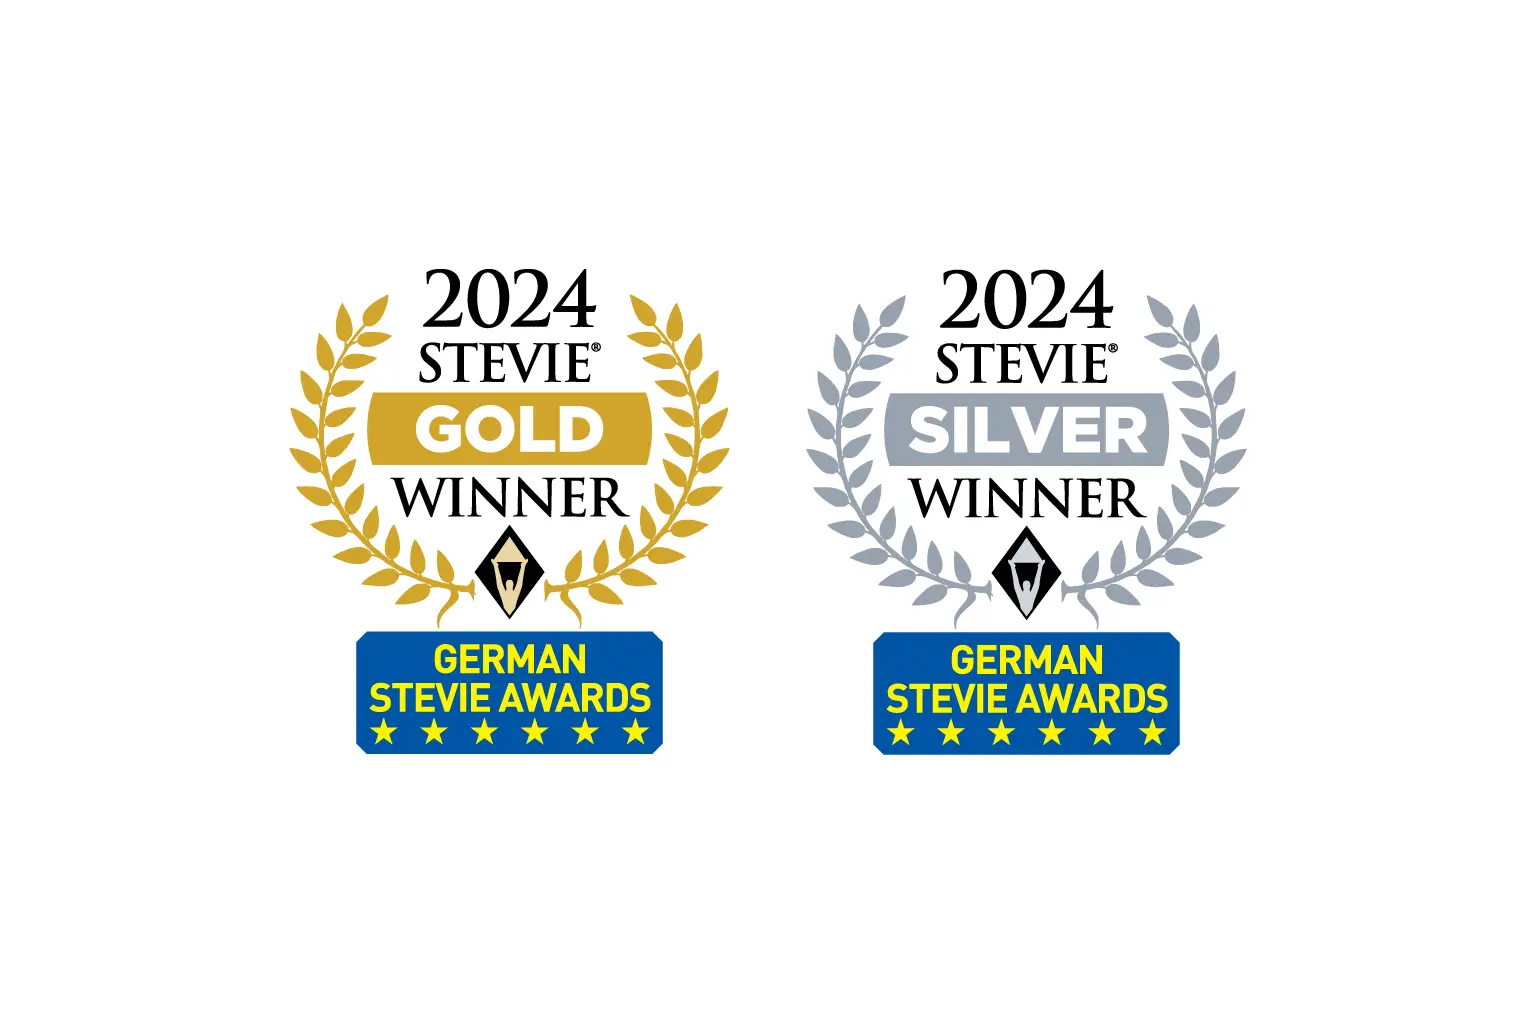 Kleos gewinnt 2 Stevie Awards 2024 german